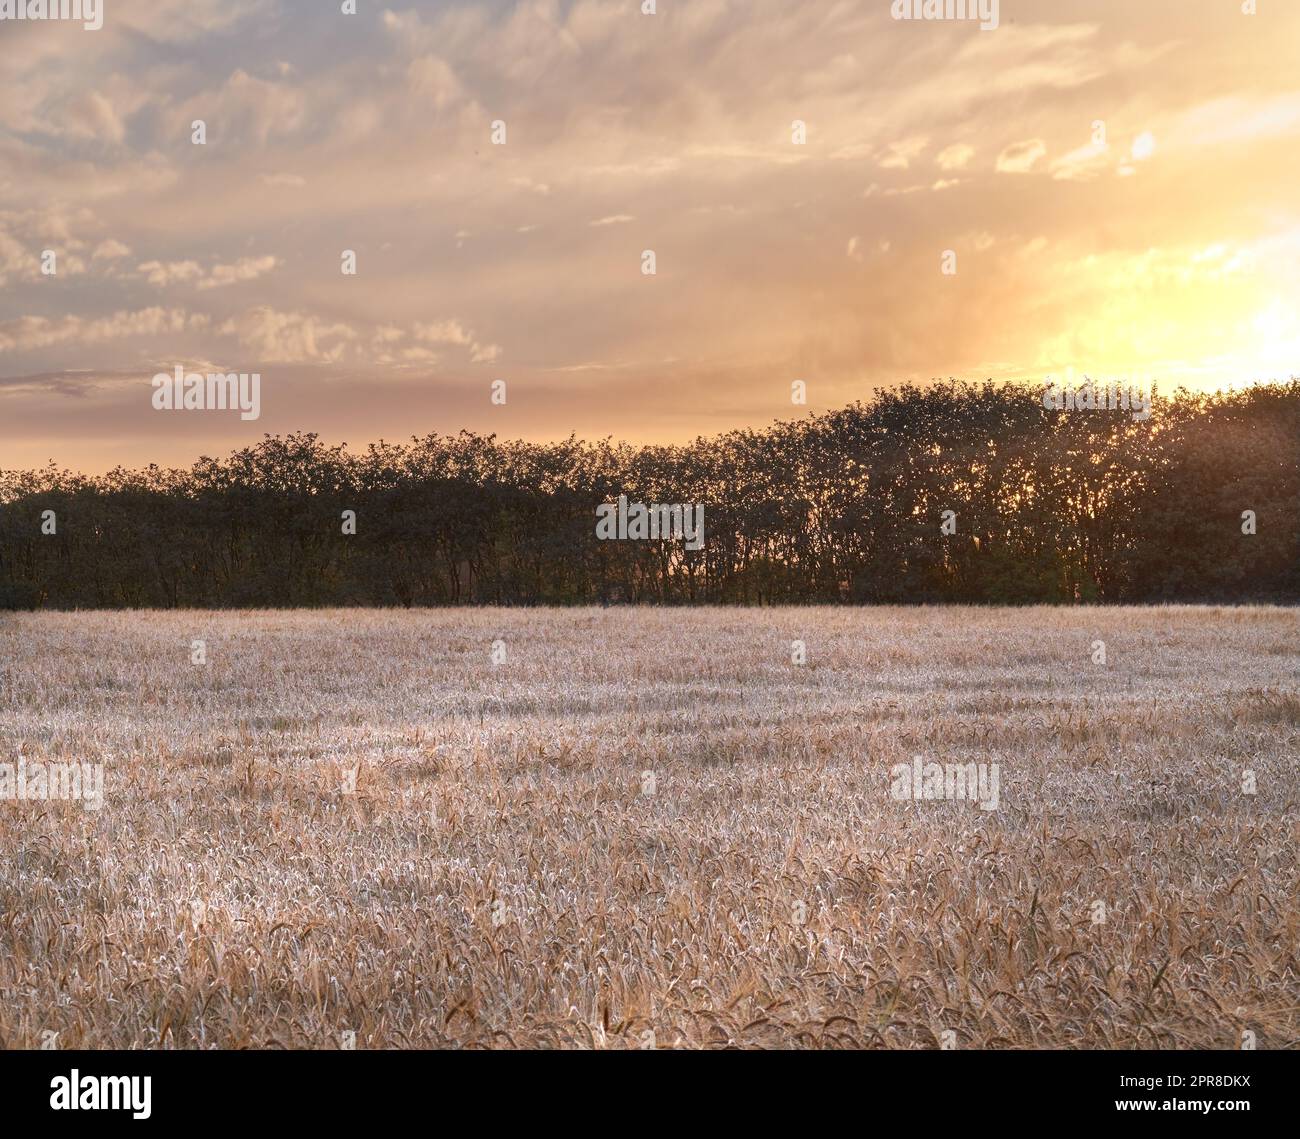 Vue panoramique sur les tiges de queue de chat, herbage, arbres, ciel nuageux au coucher du soleil avec copyspace en Norvège. L'herbe, l'eau se déforme dans un marais ou un champ à distance. Mère nature avec paysage de nuit en Allemagne Banque D'Images